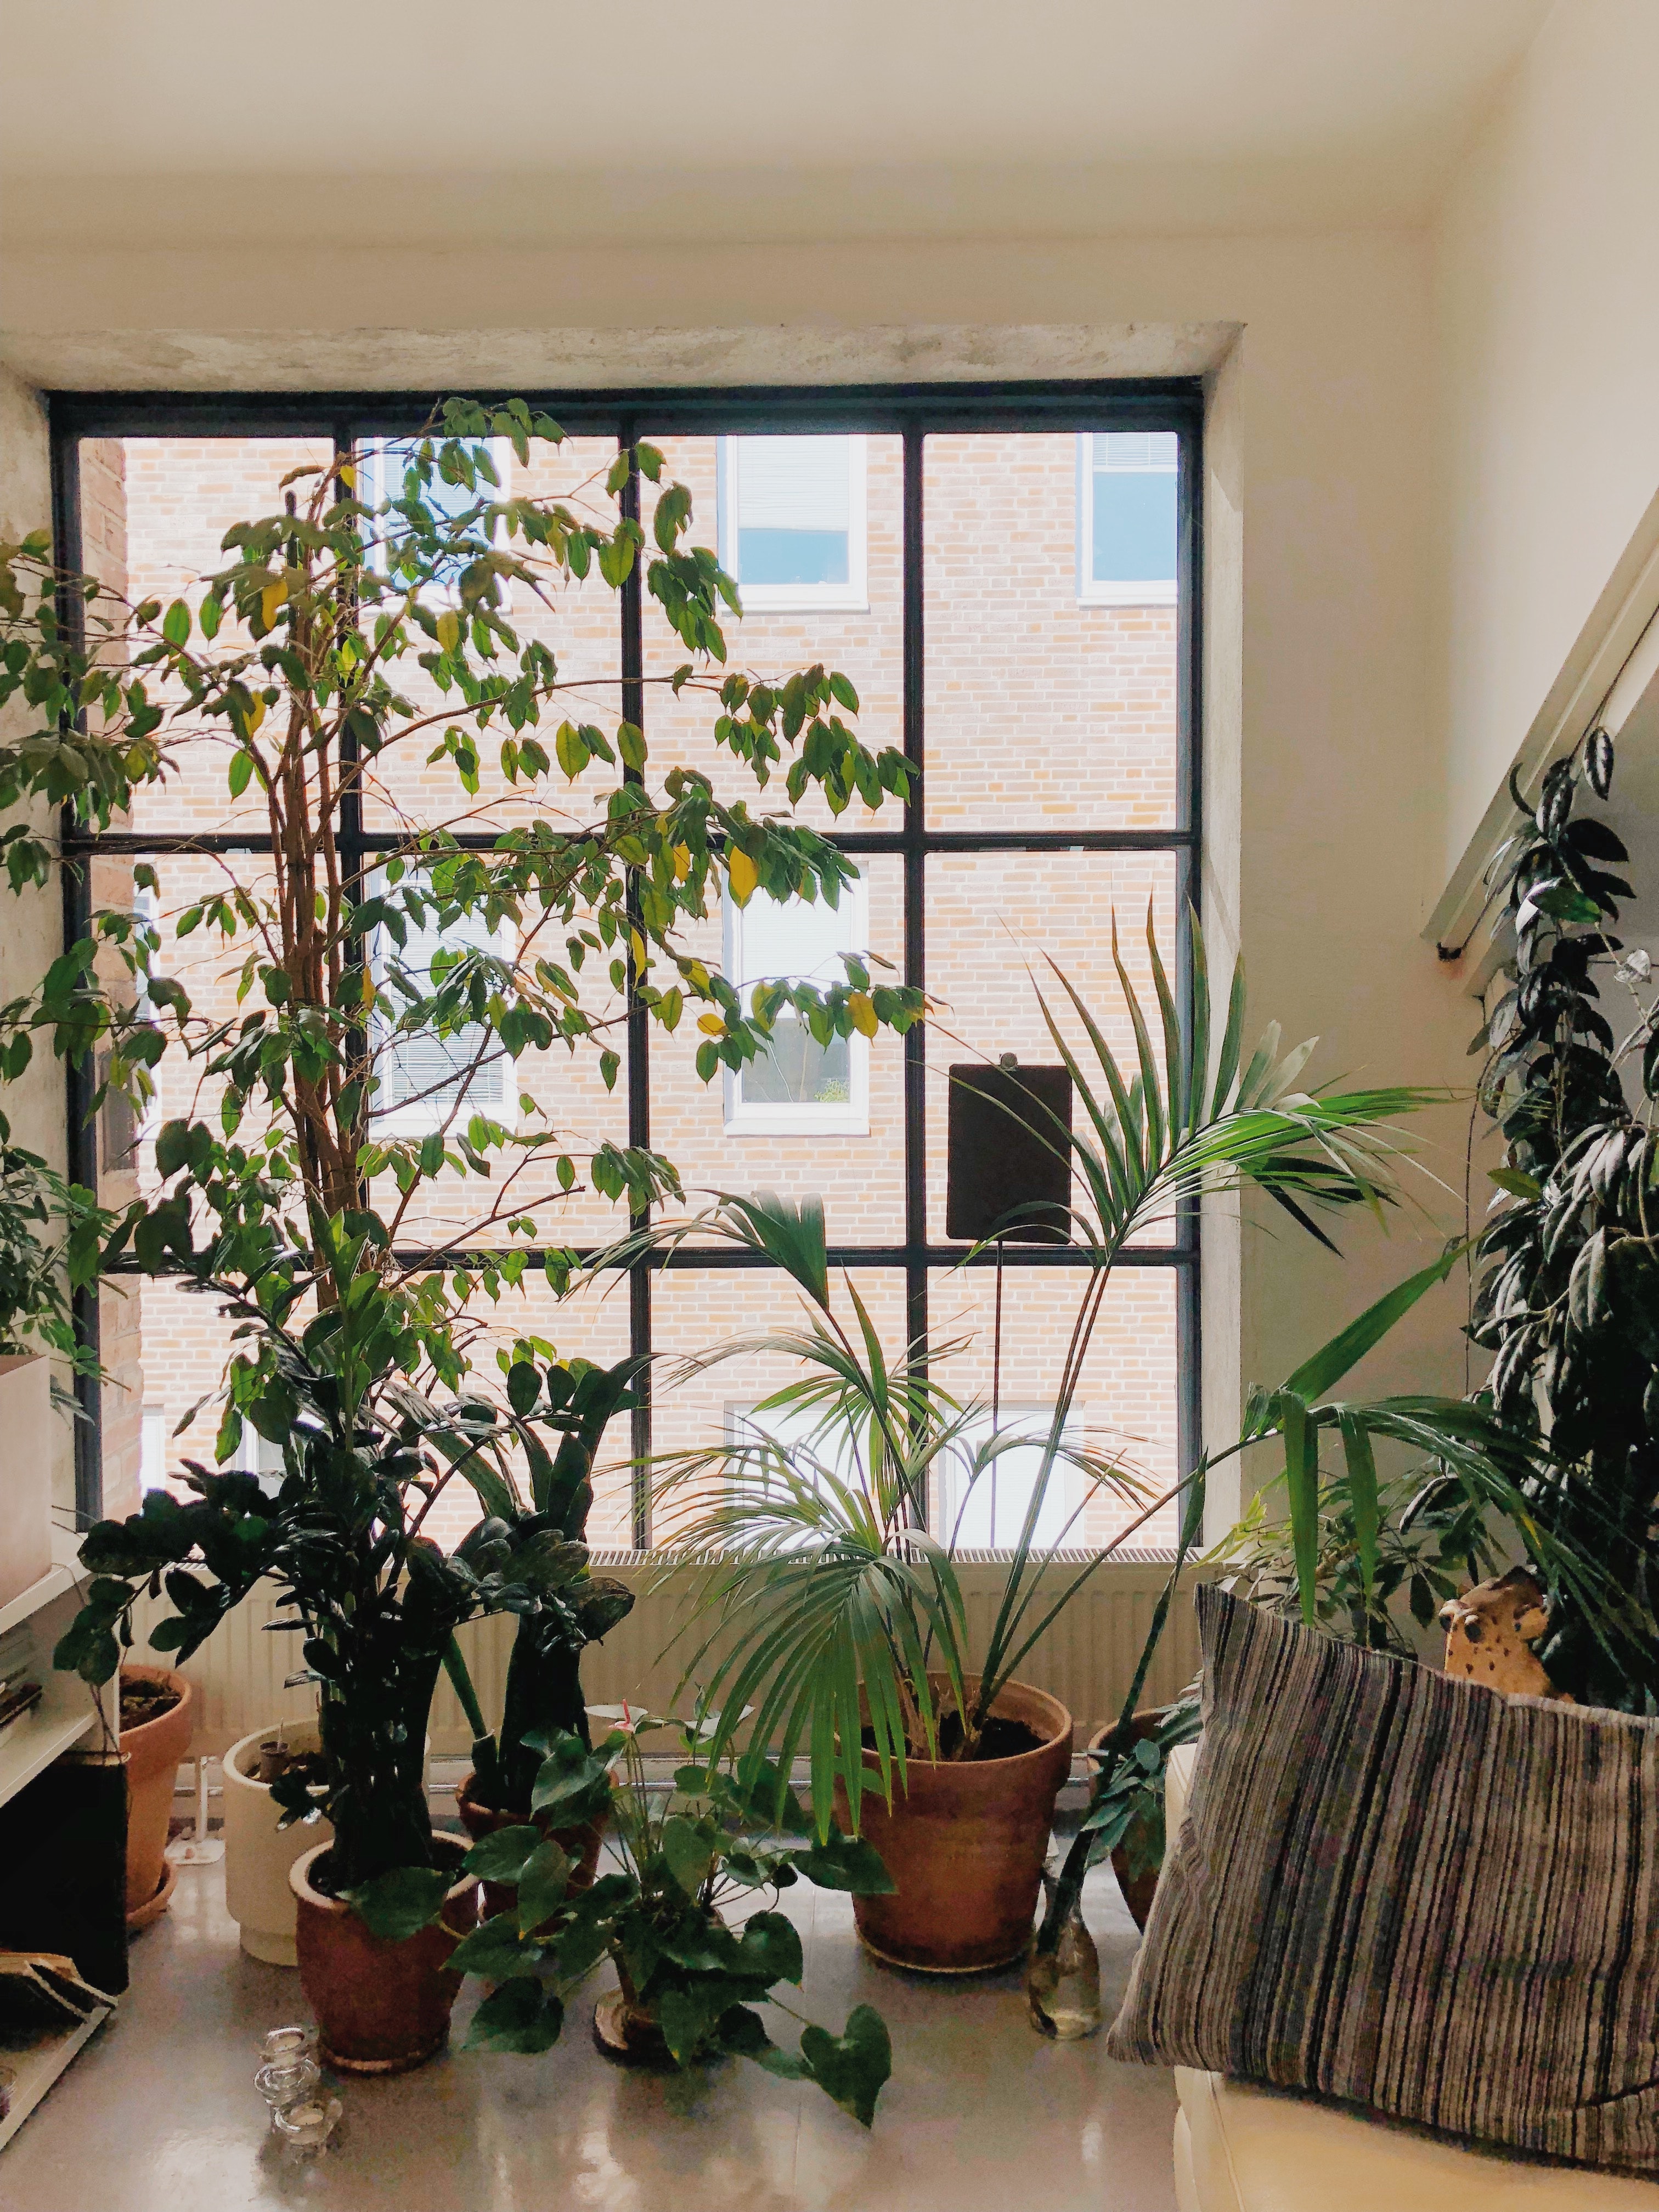 Plantas tropicais podem se adaptar a ambientes internos da casa - Estadão